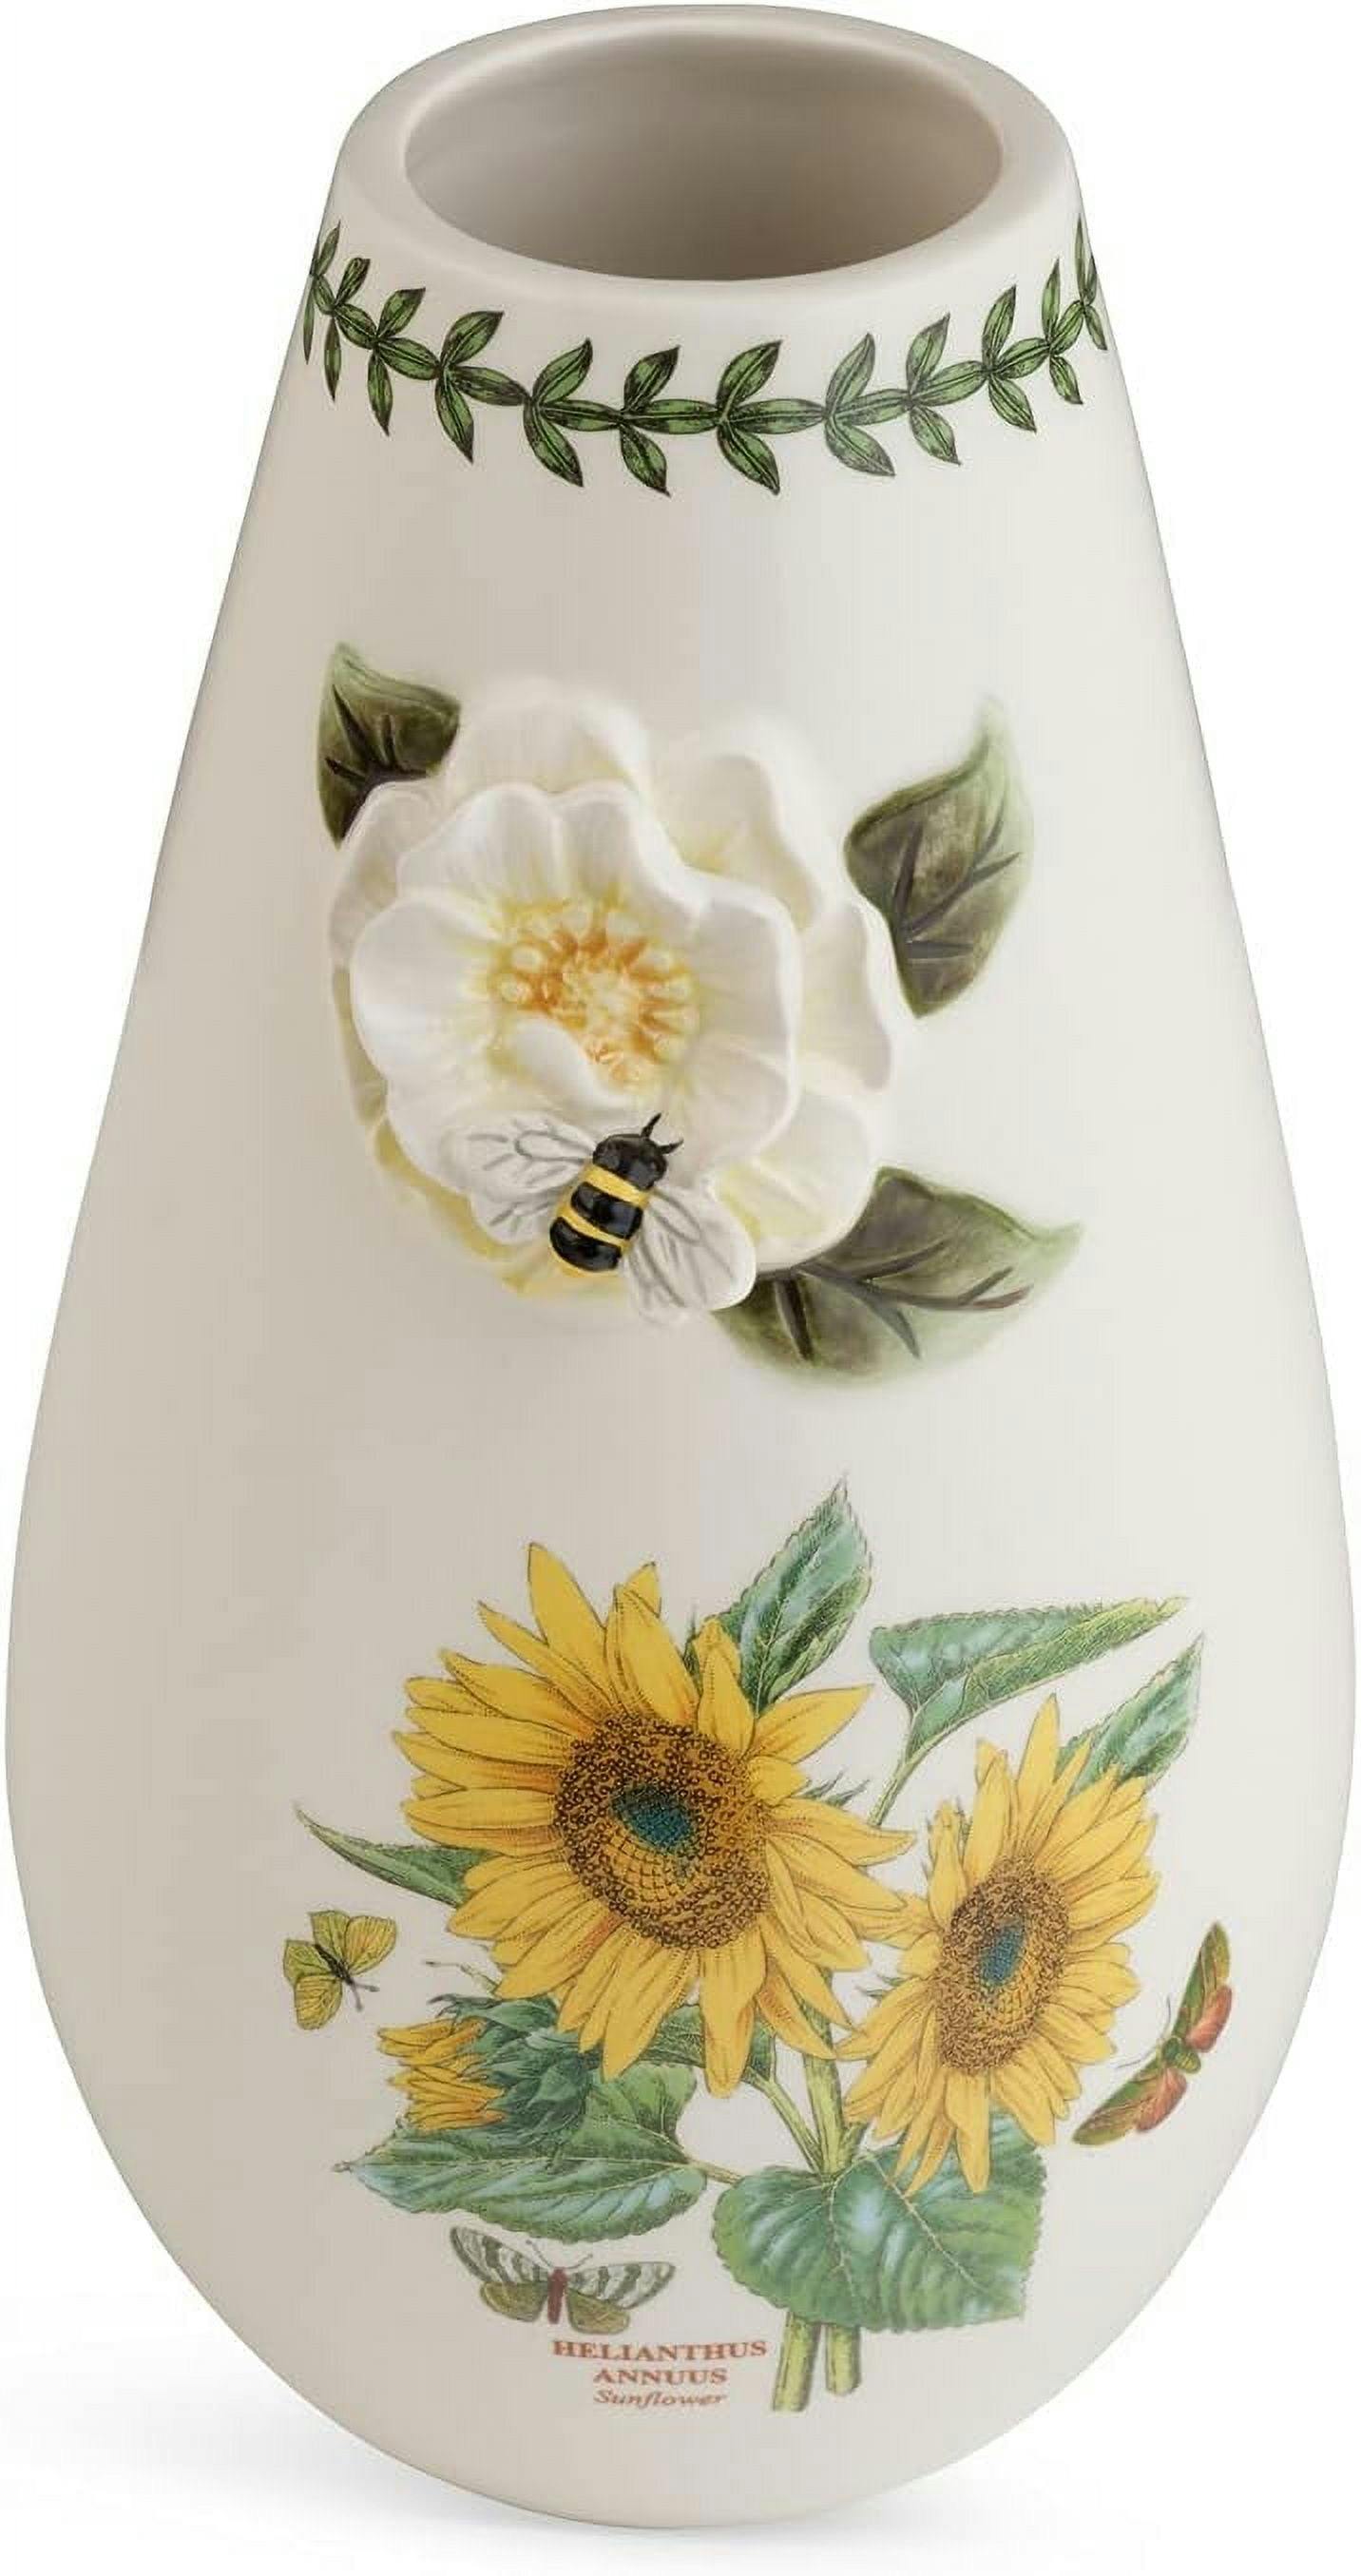 Classic Ceramic Sunflower Bud Vase with Botanical Theme